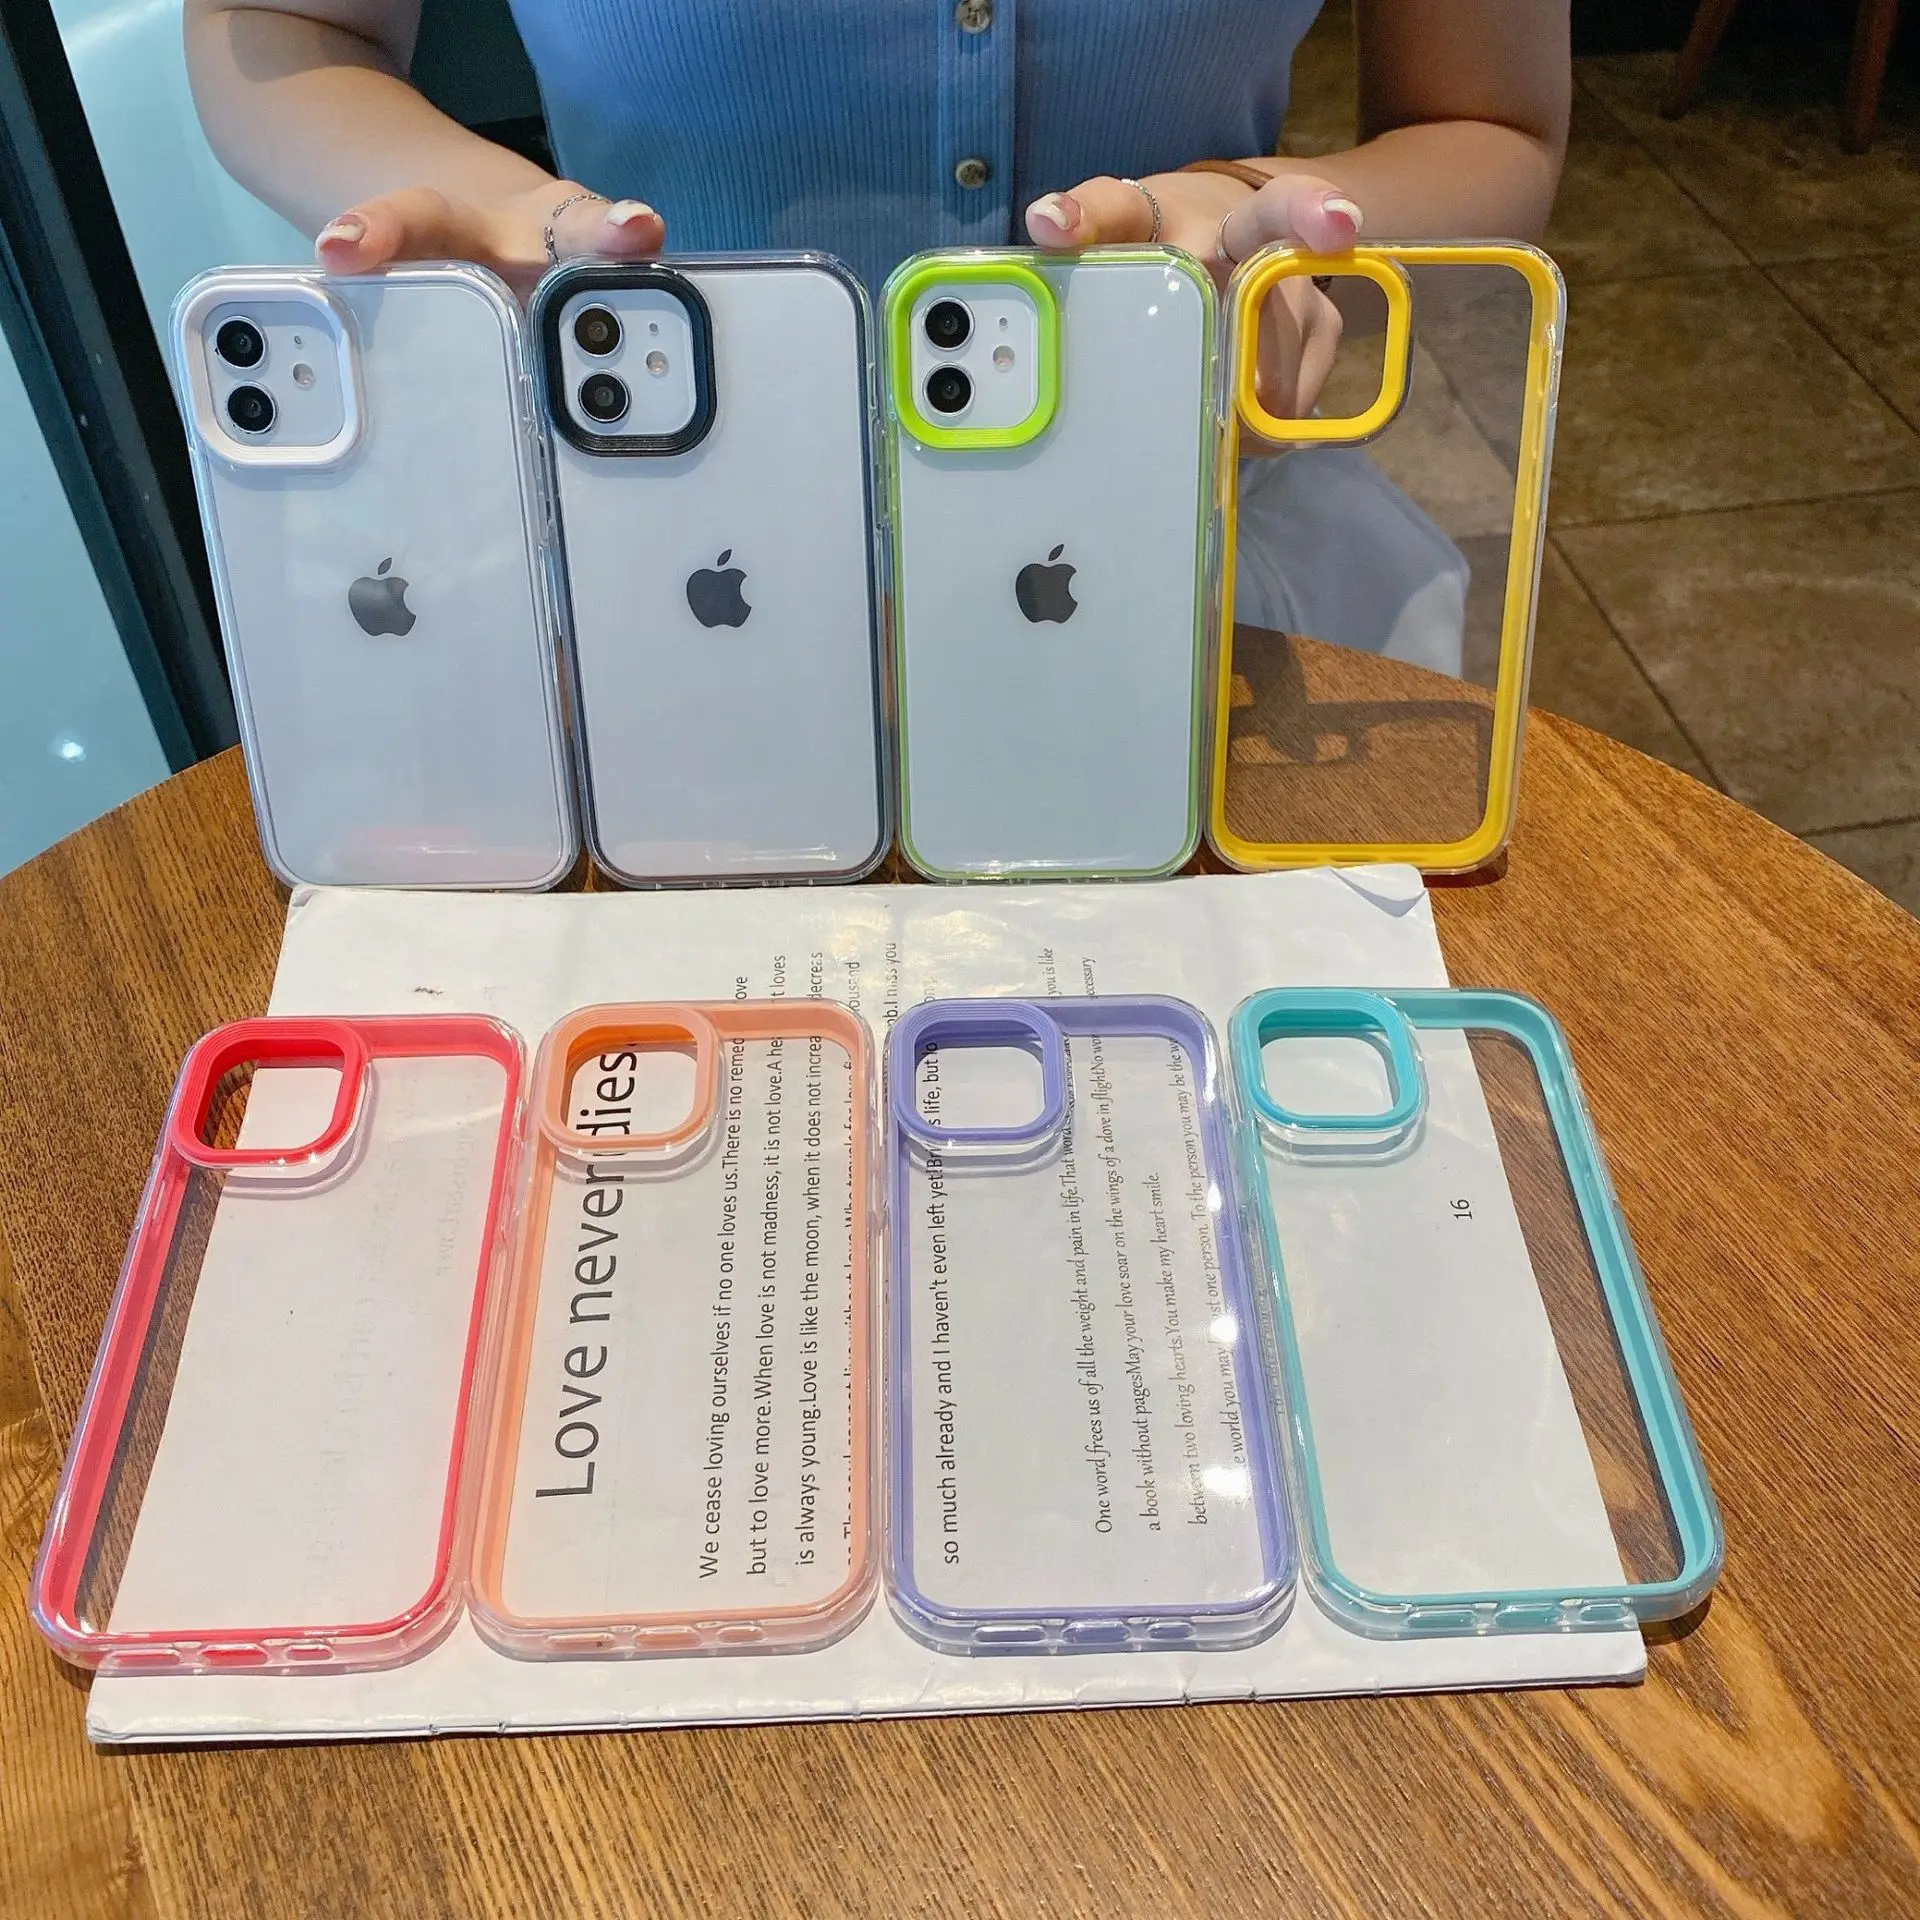 iphone 3gs cases designer